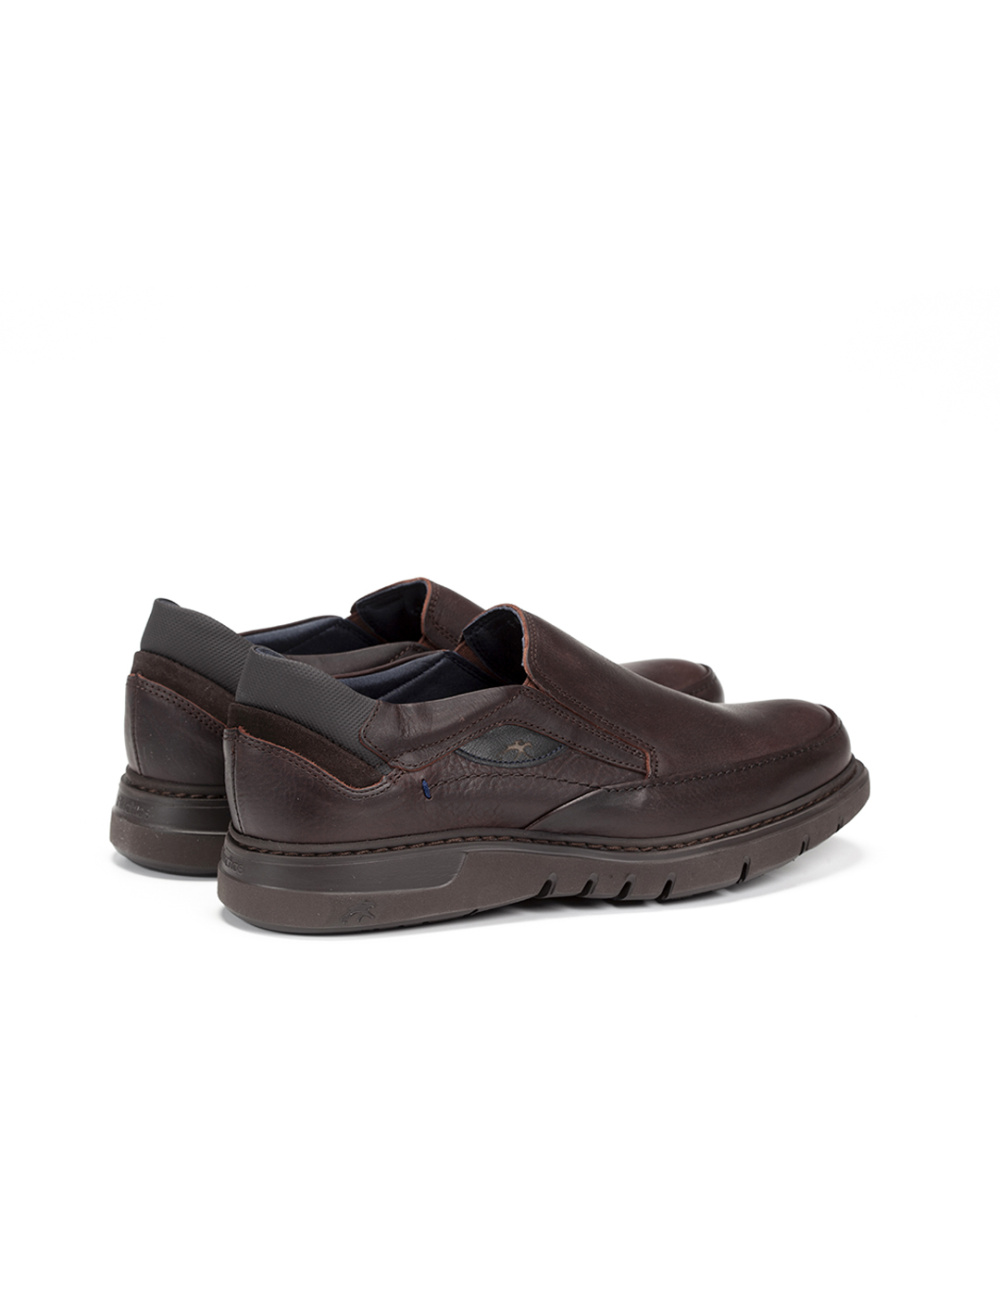 Fluchos - Zapato casual de hombre F0249